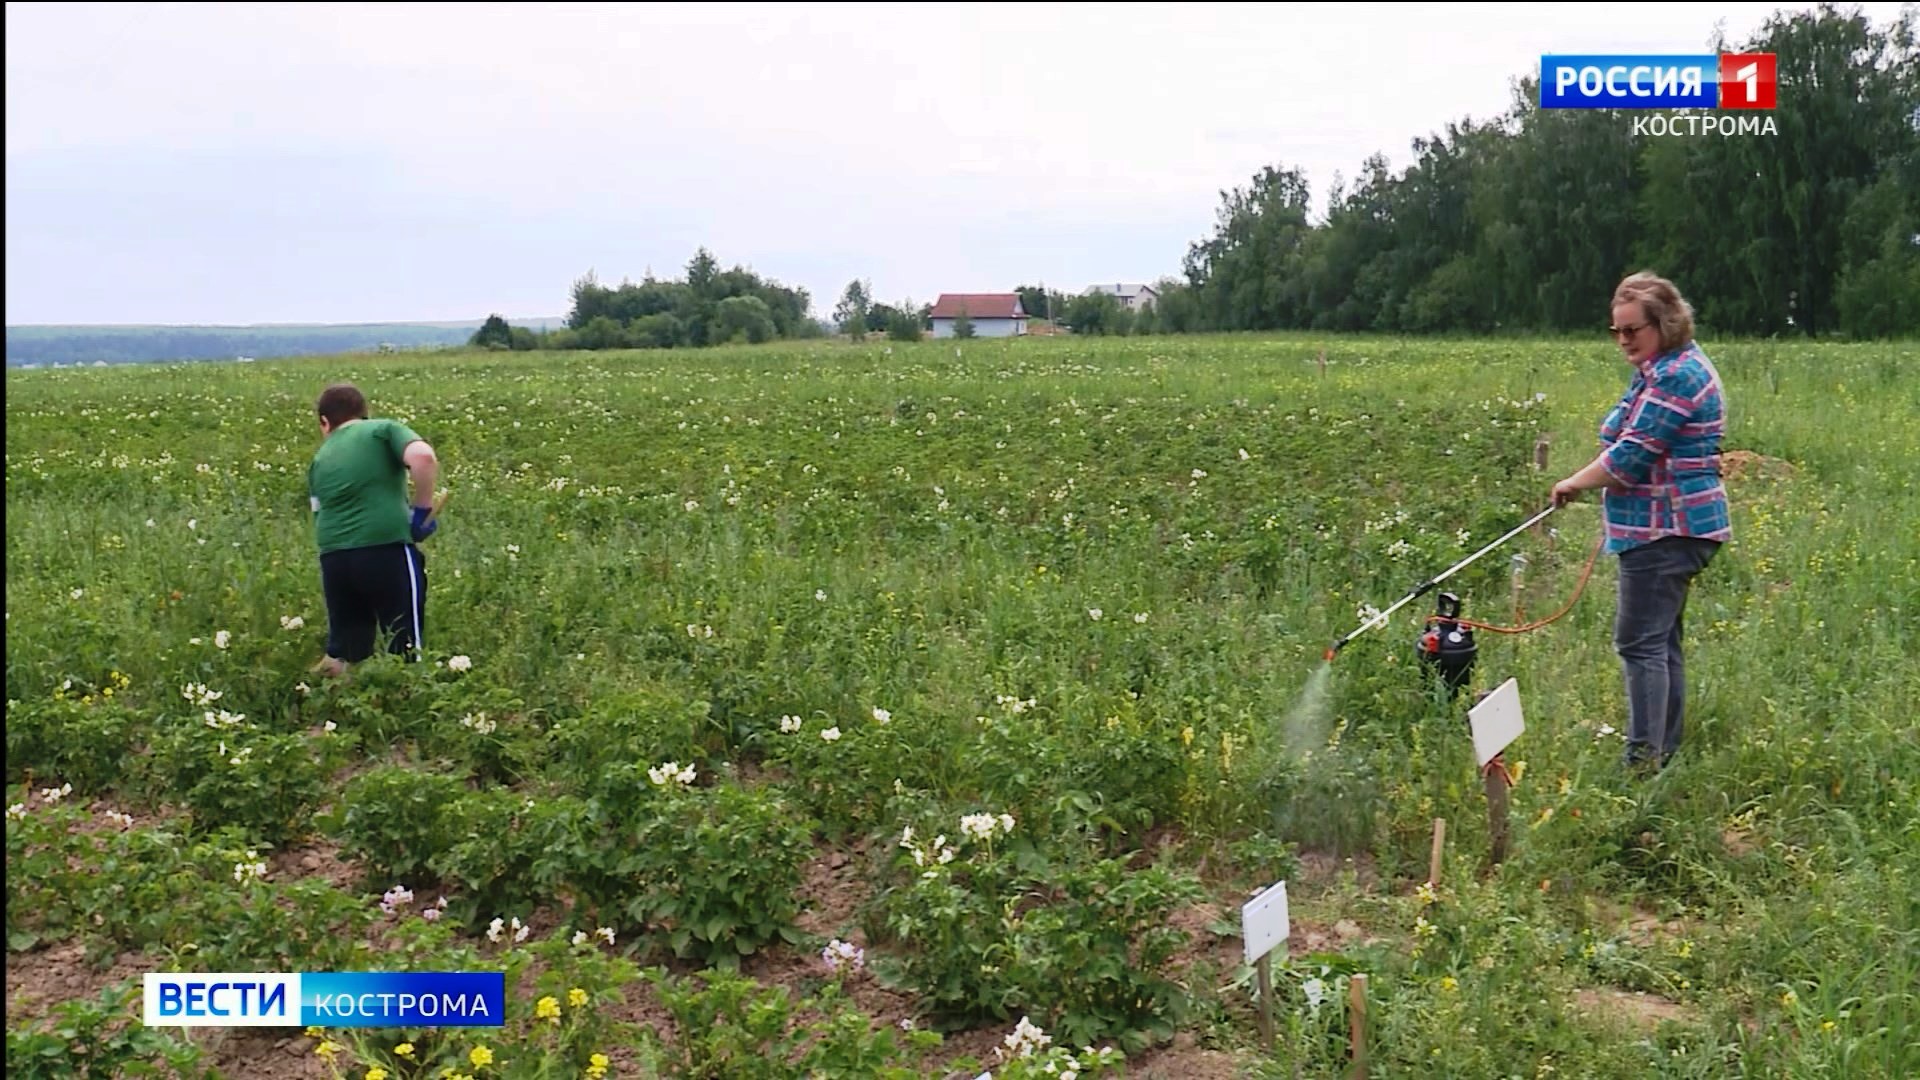 На бесплатных огородах под Костромой началась битва с колорадскими жуками